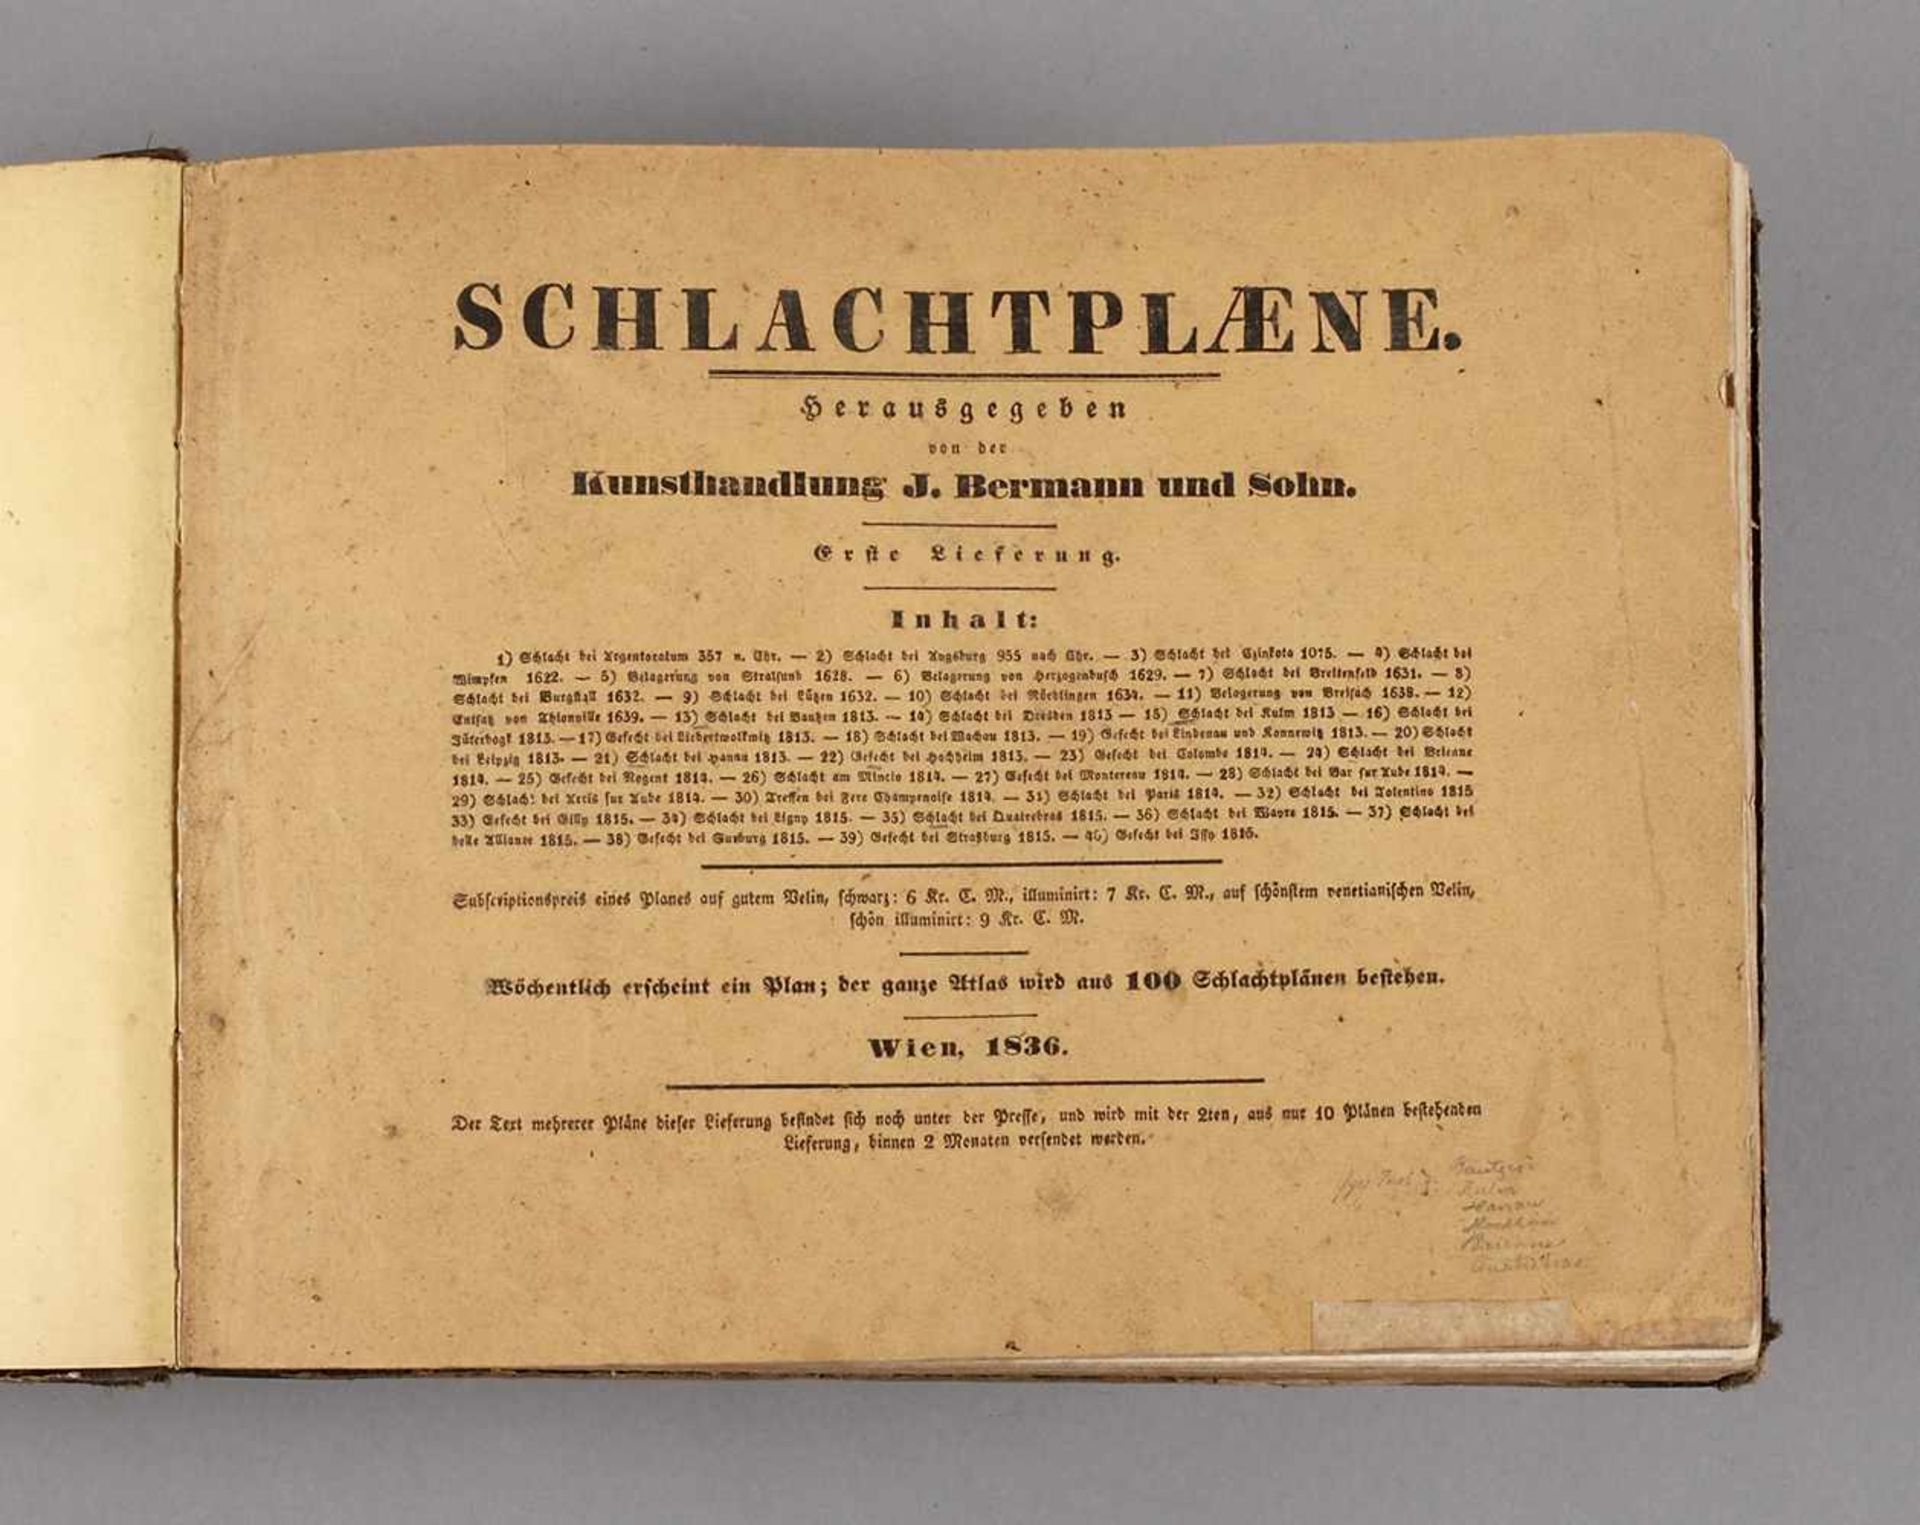 Schlachtpläne hrsg. von der Kunsthandlung J. Bermann und Sohn, 1. bis 4. Lieferung, Wien 1836/37/38,